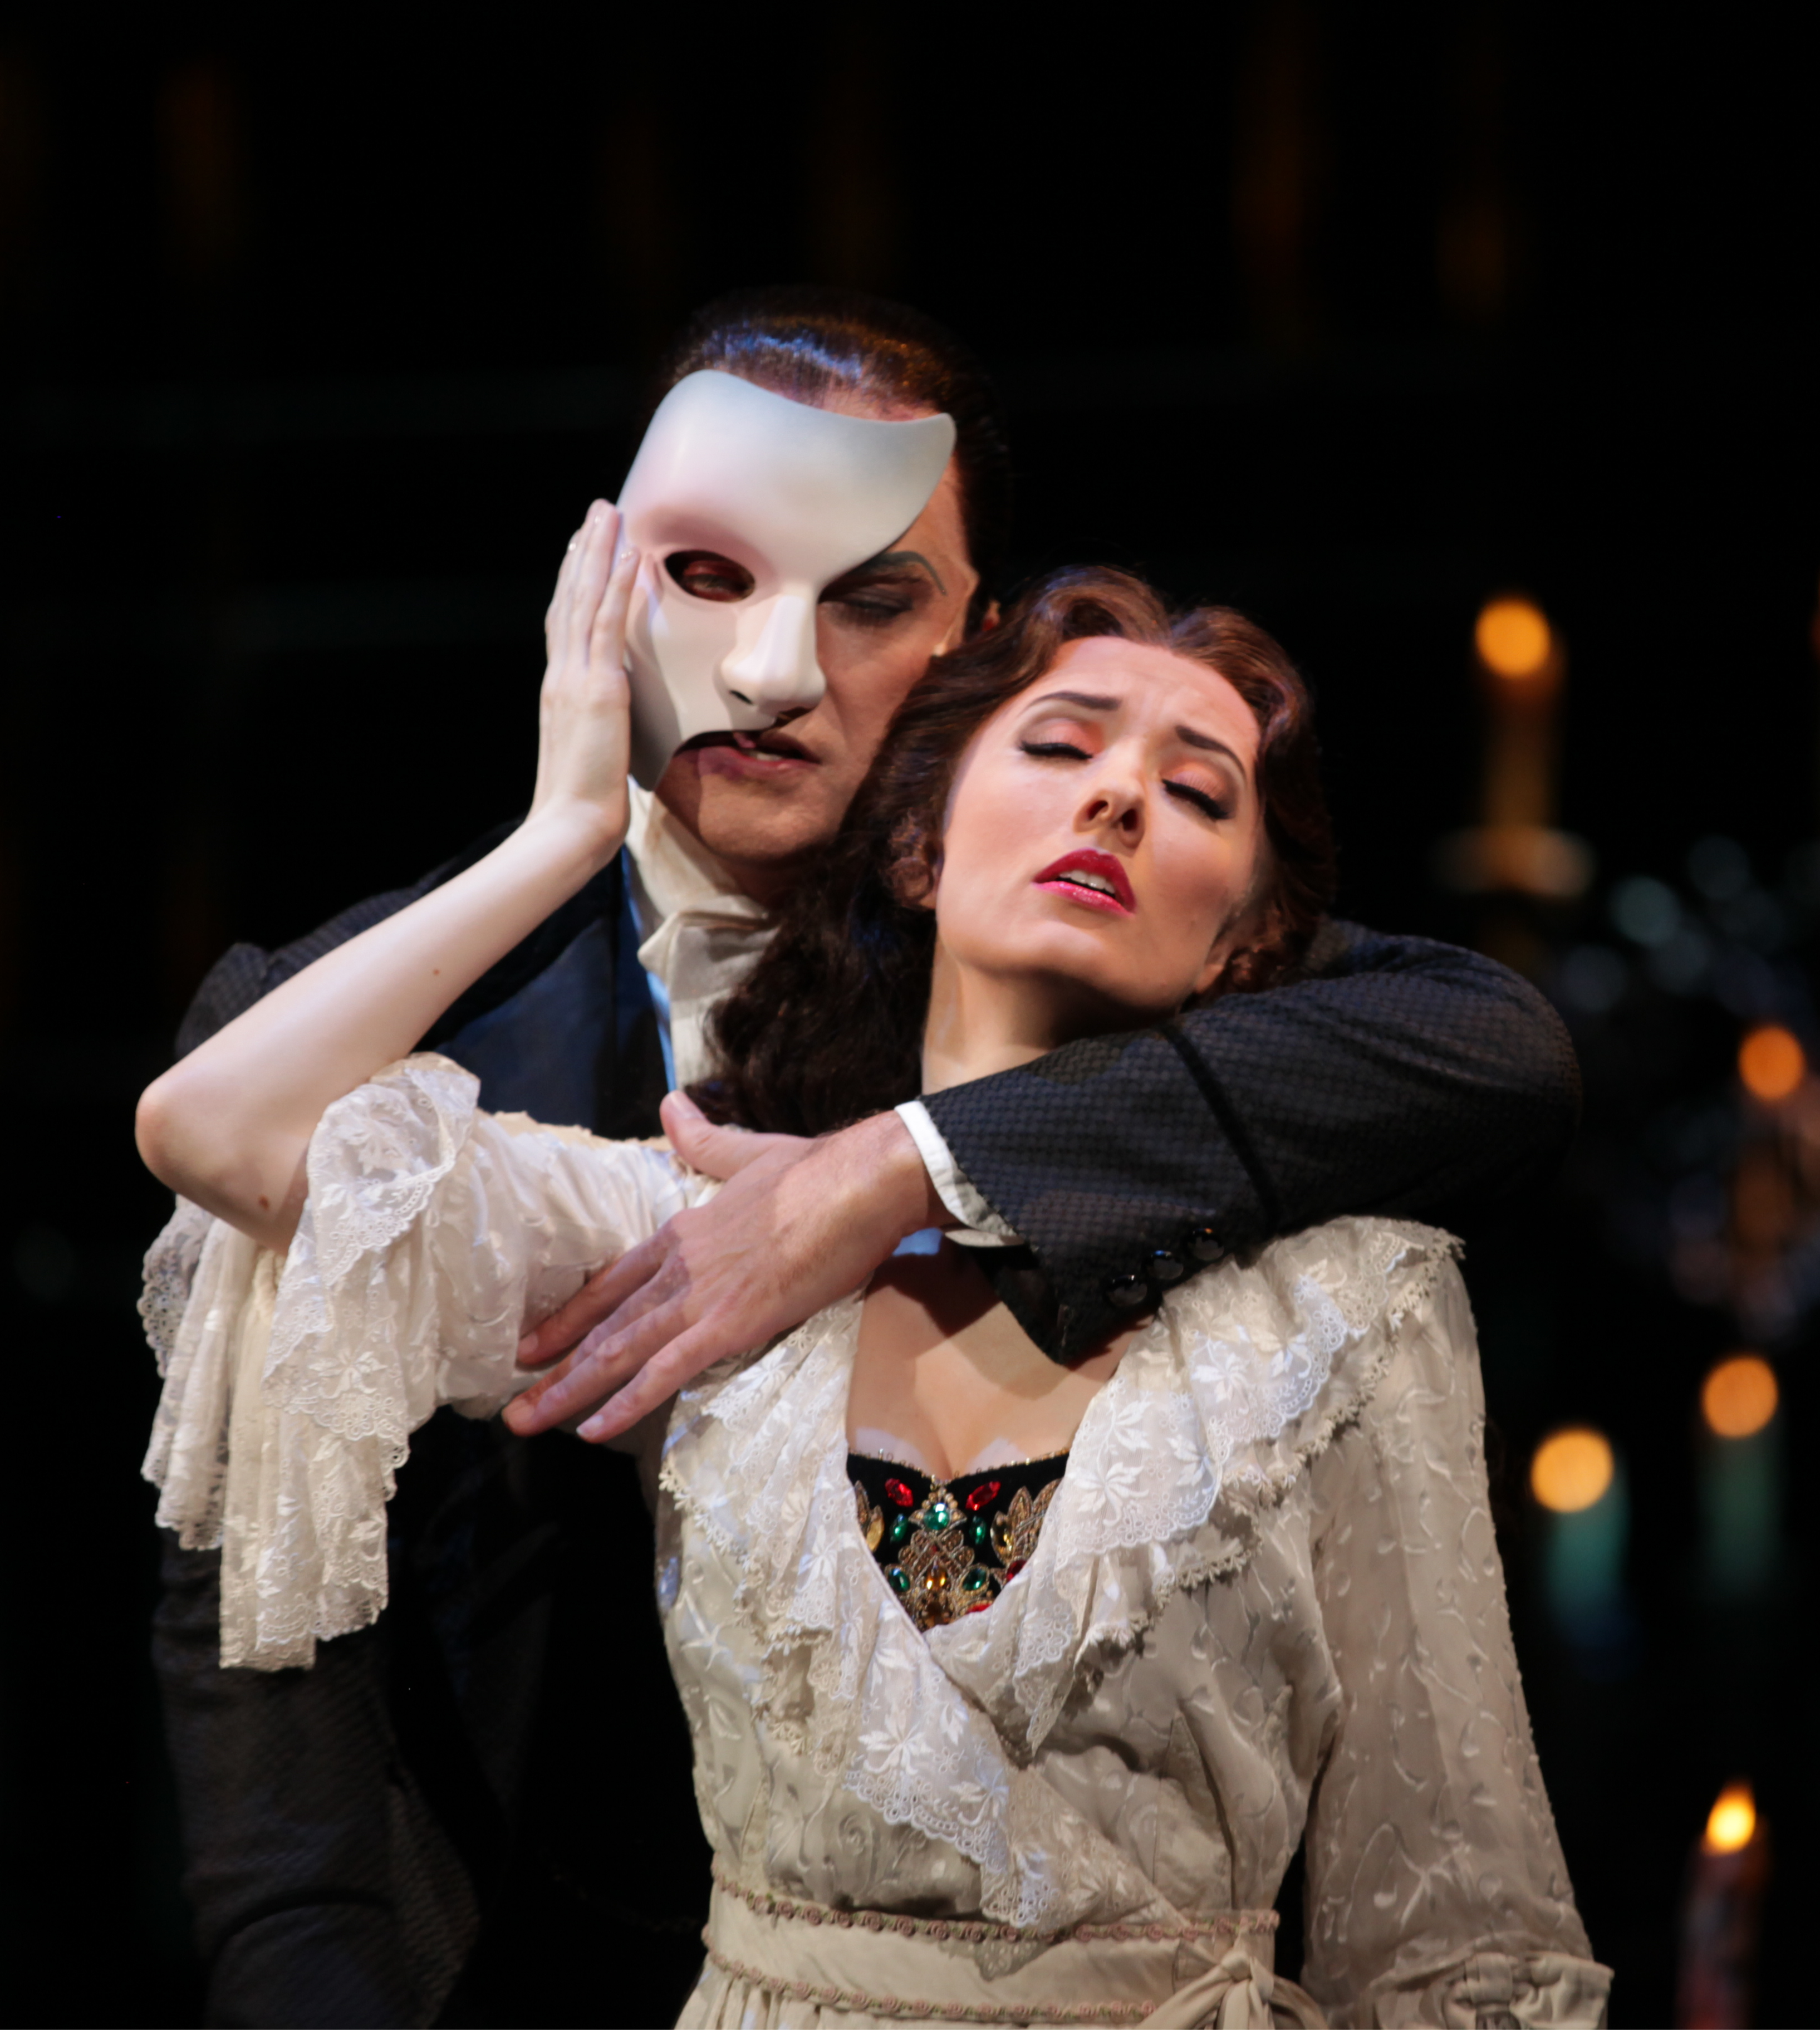 Das Phantom der Oper: Vom Scheusal zum Sexsymbol | unique-online.de